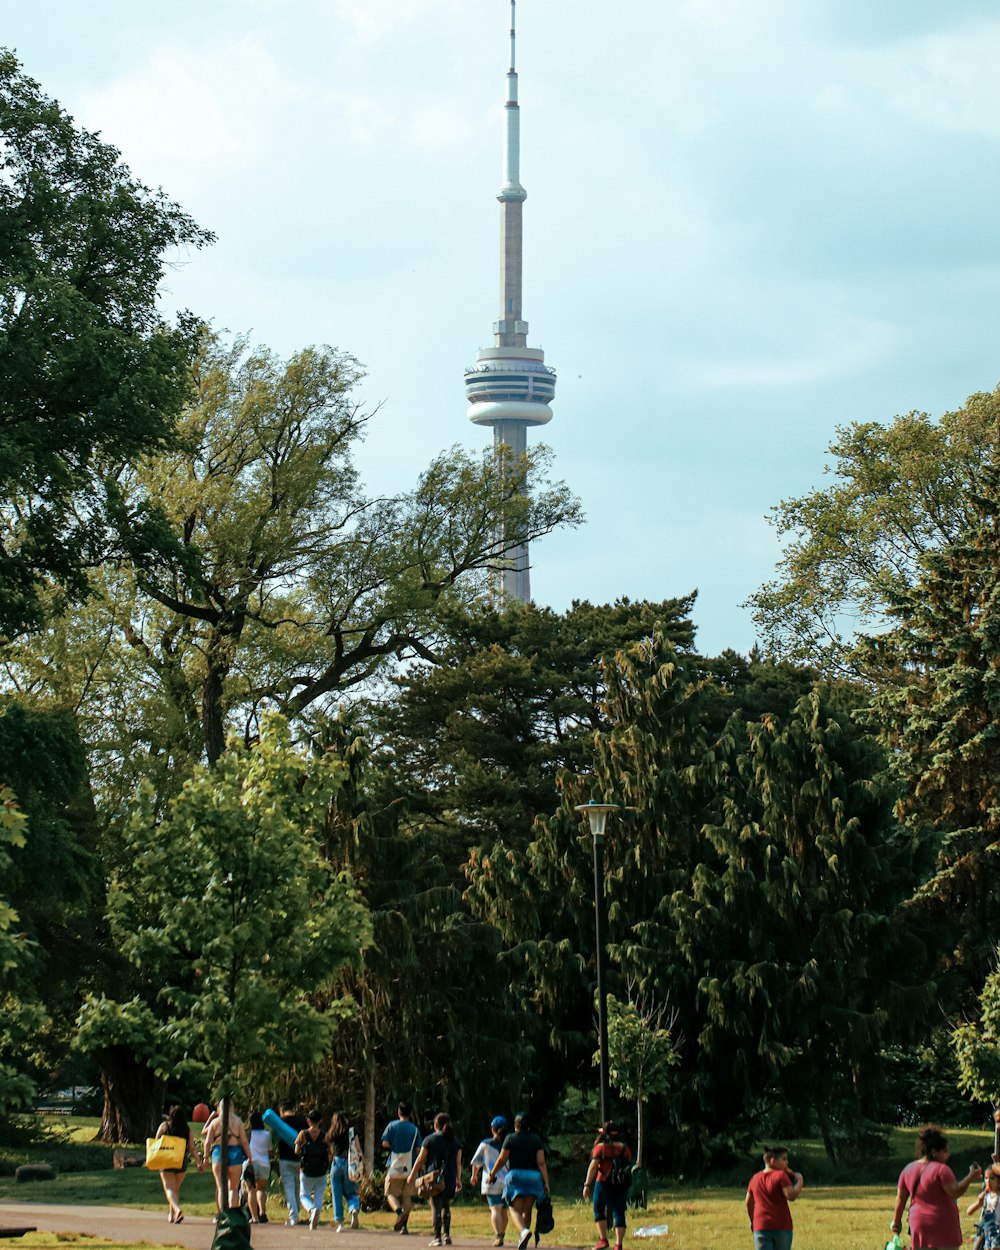 Eine Gruppe von Menschen, die in einem Park spazieren gehen, mit einem hohen spitzen Turm im Hintergrund